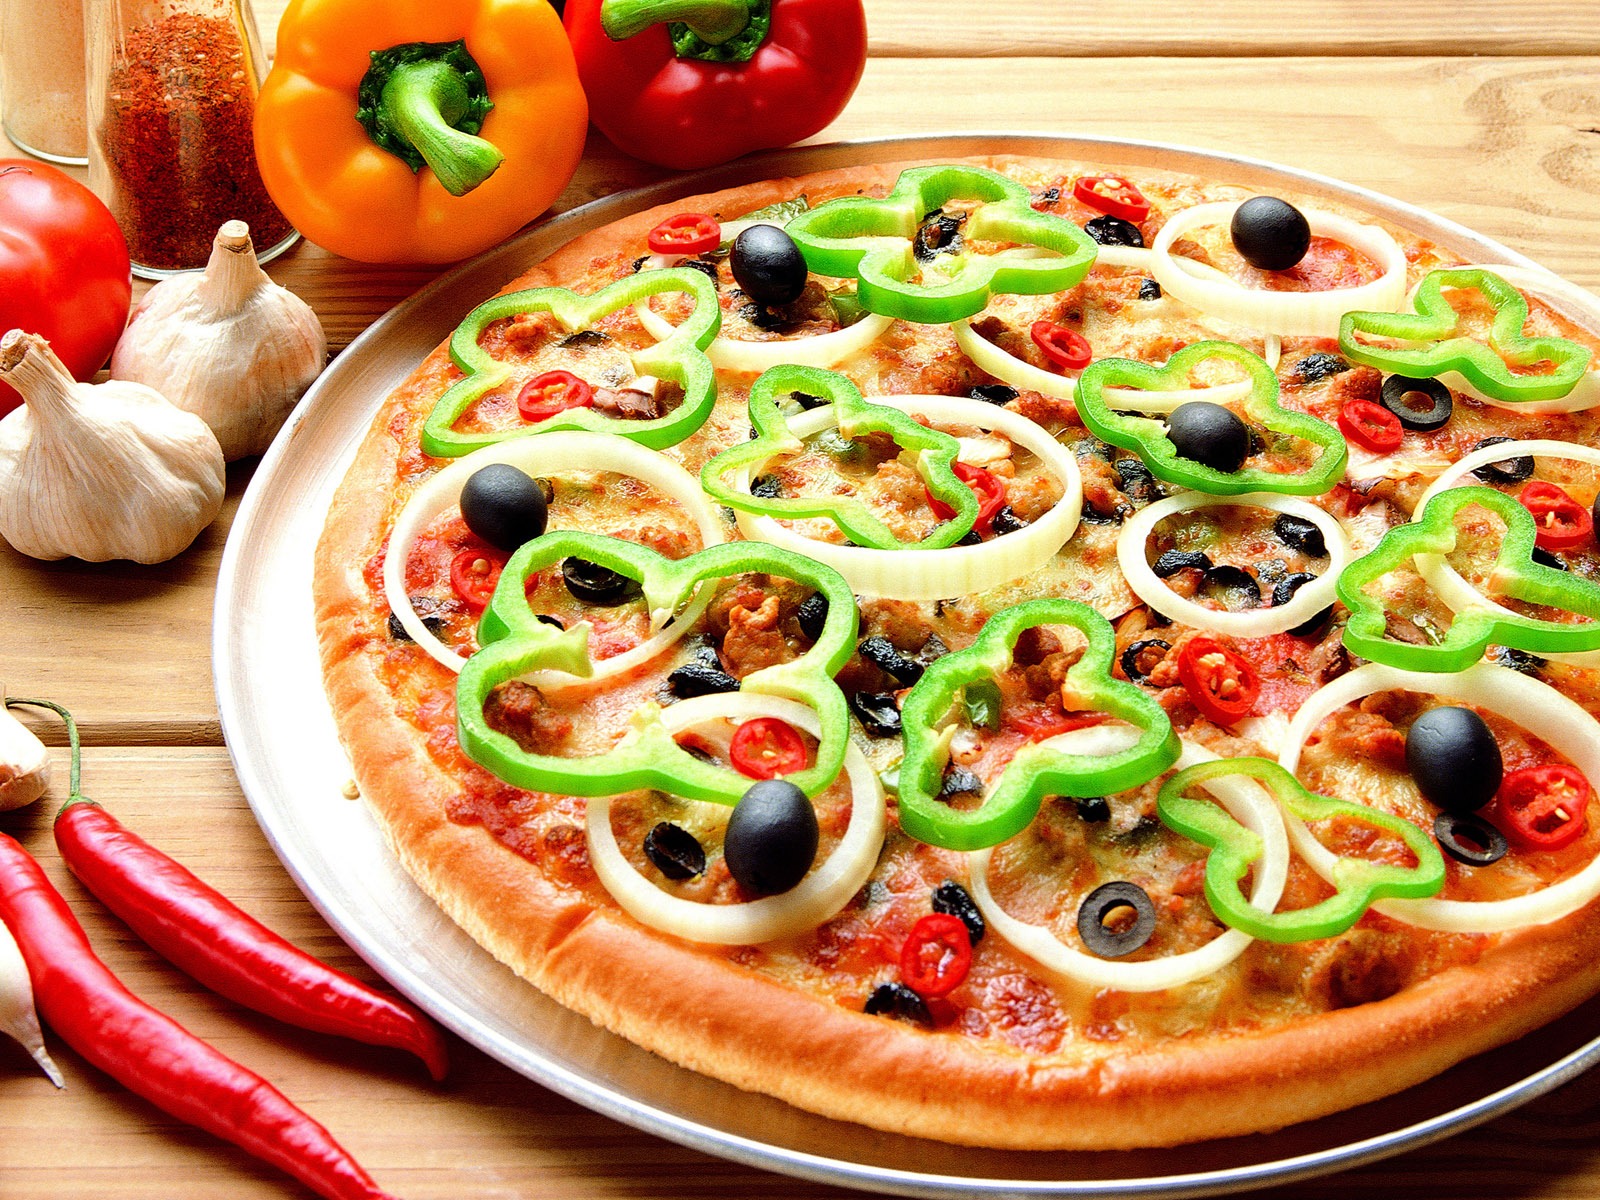 Fondos de pizzerías de Alimentos (3) #1 - 1600x1200